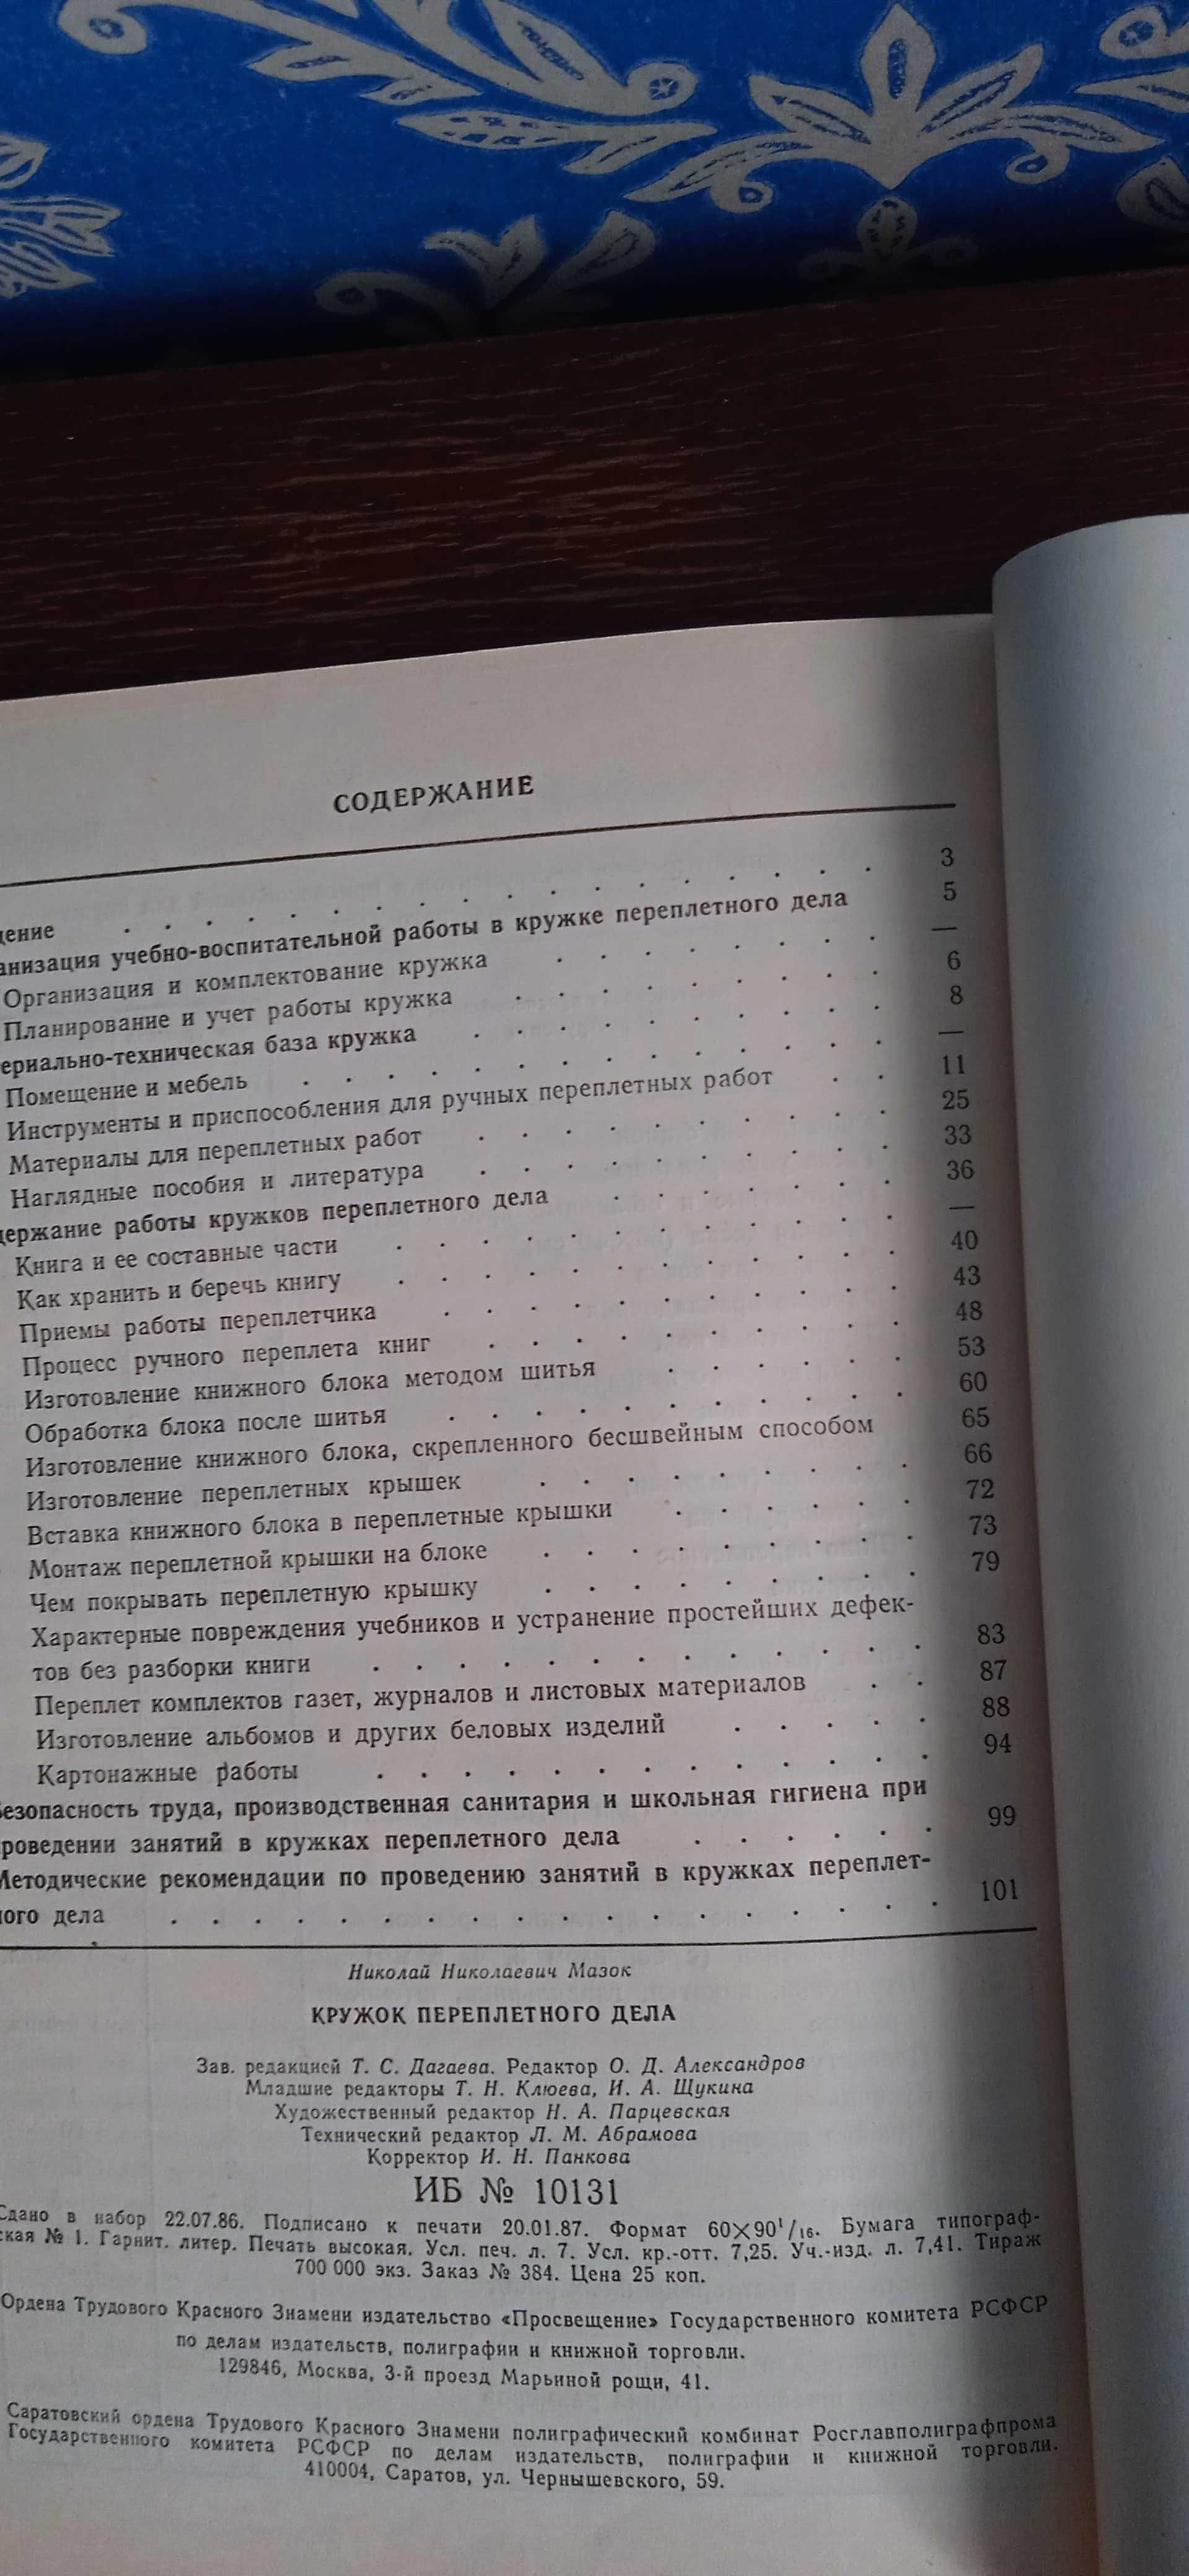 Кружок переплетного дела Мазок. Книга